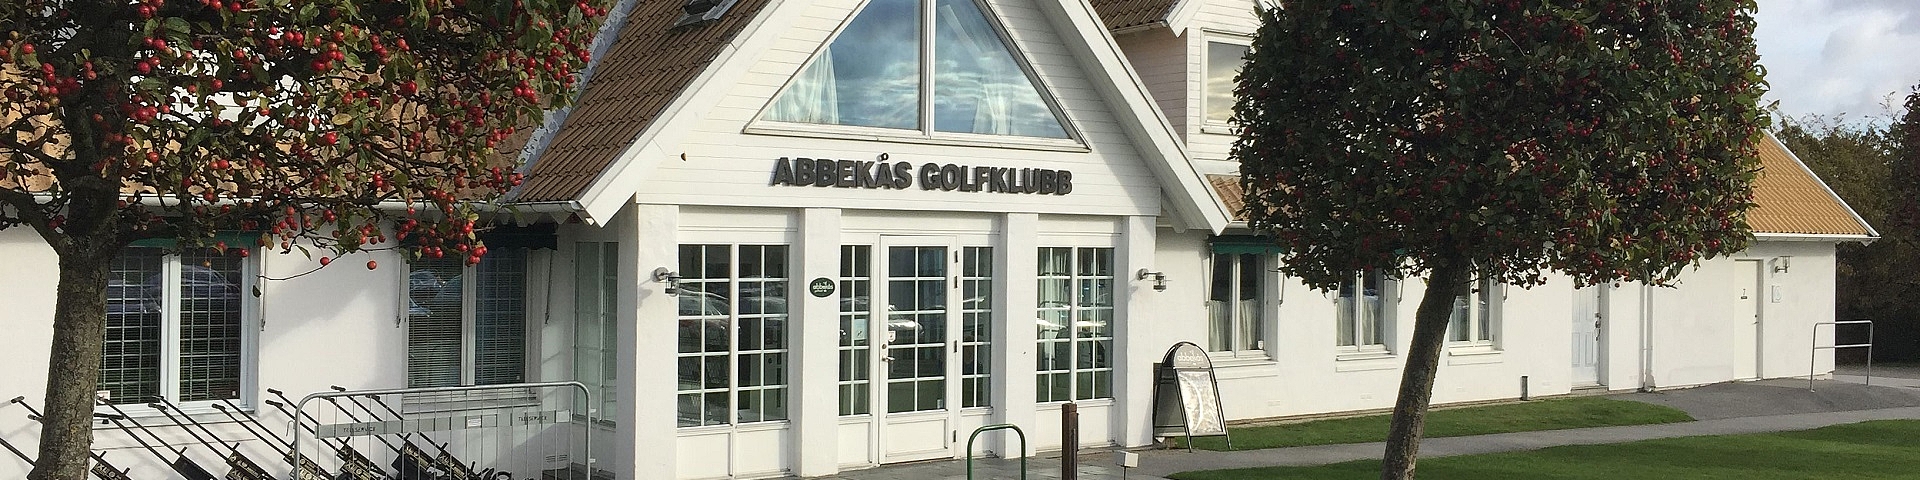 Abbekås Golfklubb